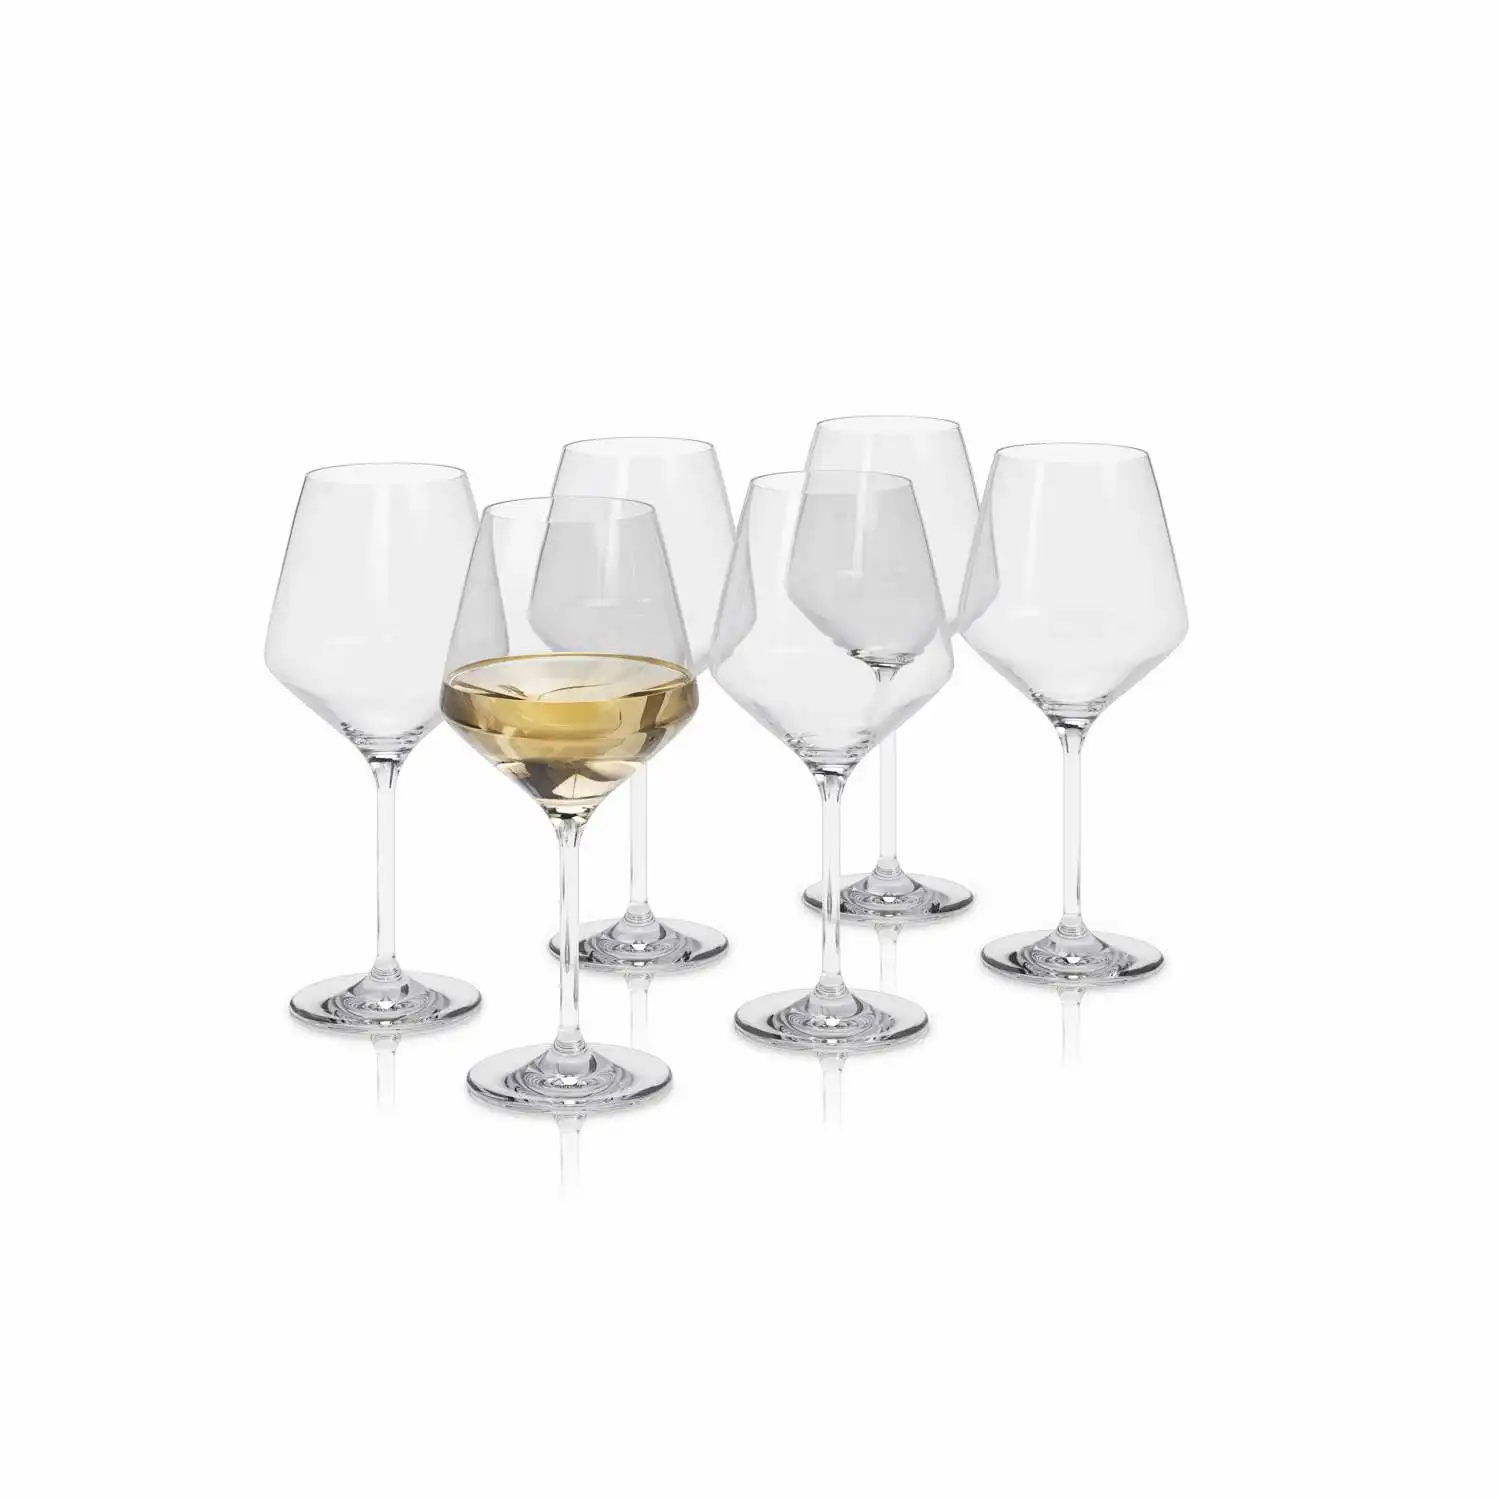 541205-white-wine-glass-legio-nova-6pcs.webp